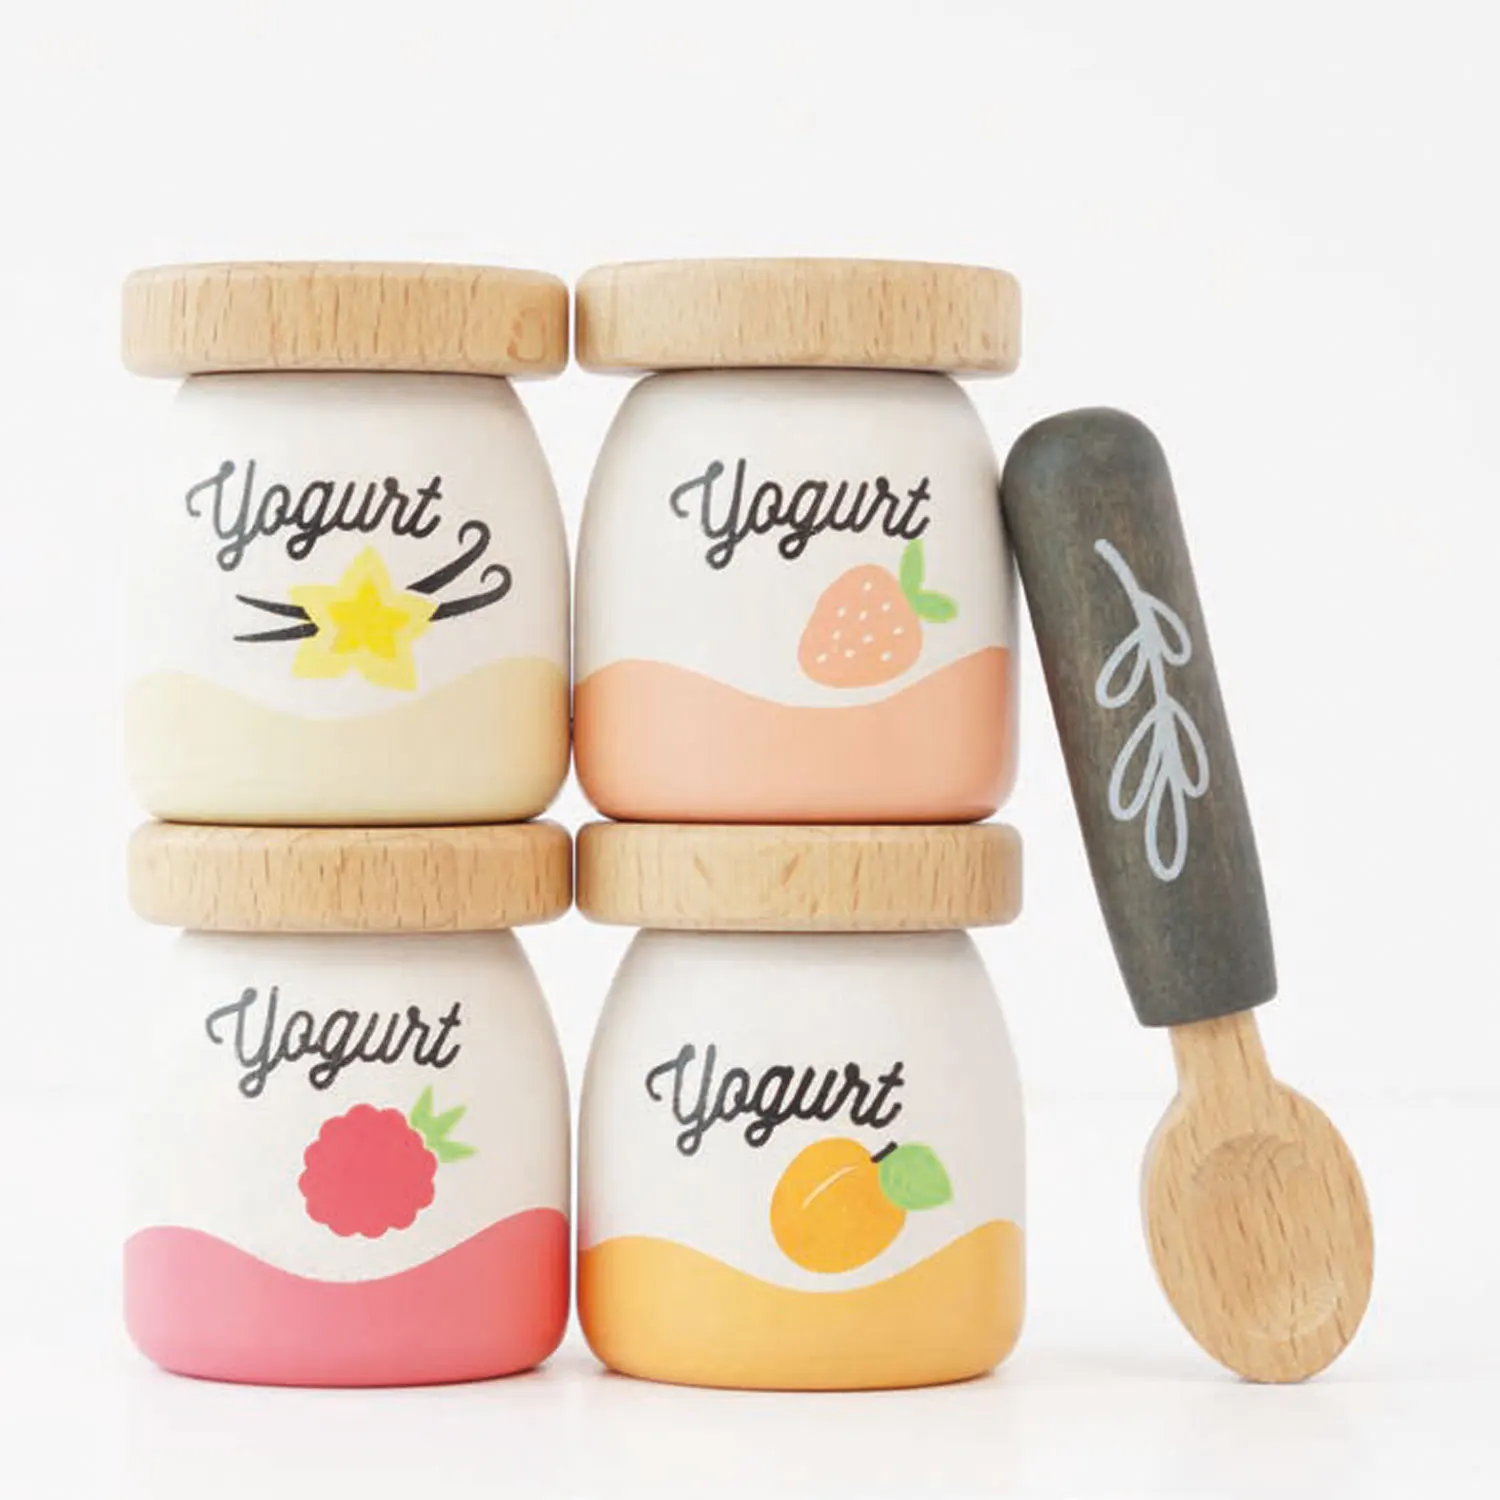 Joghurt Packung / Yogurt Play Food Pack